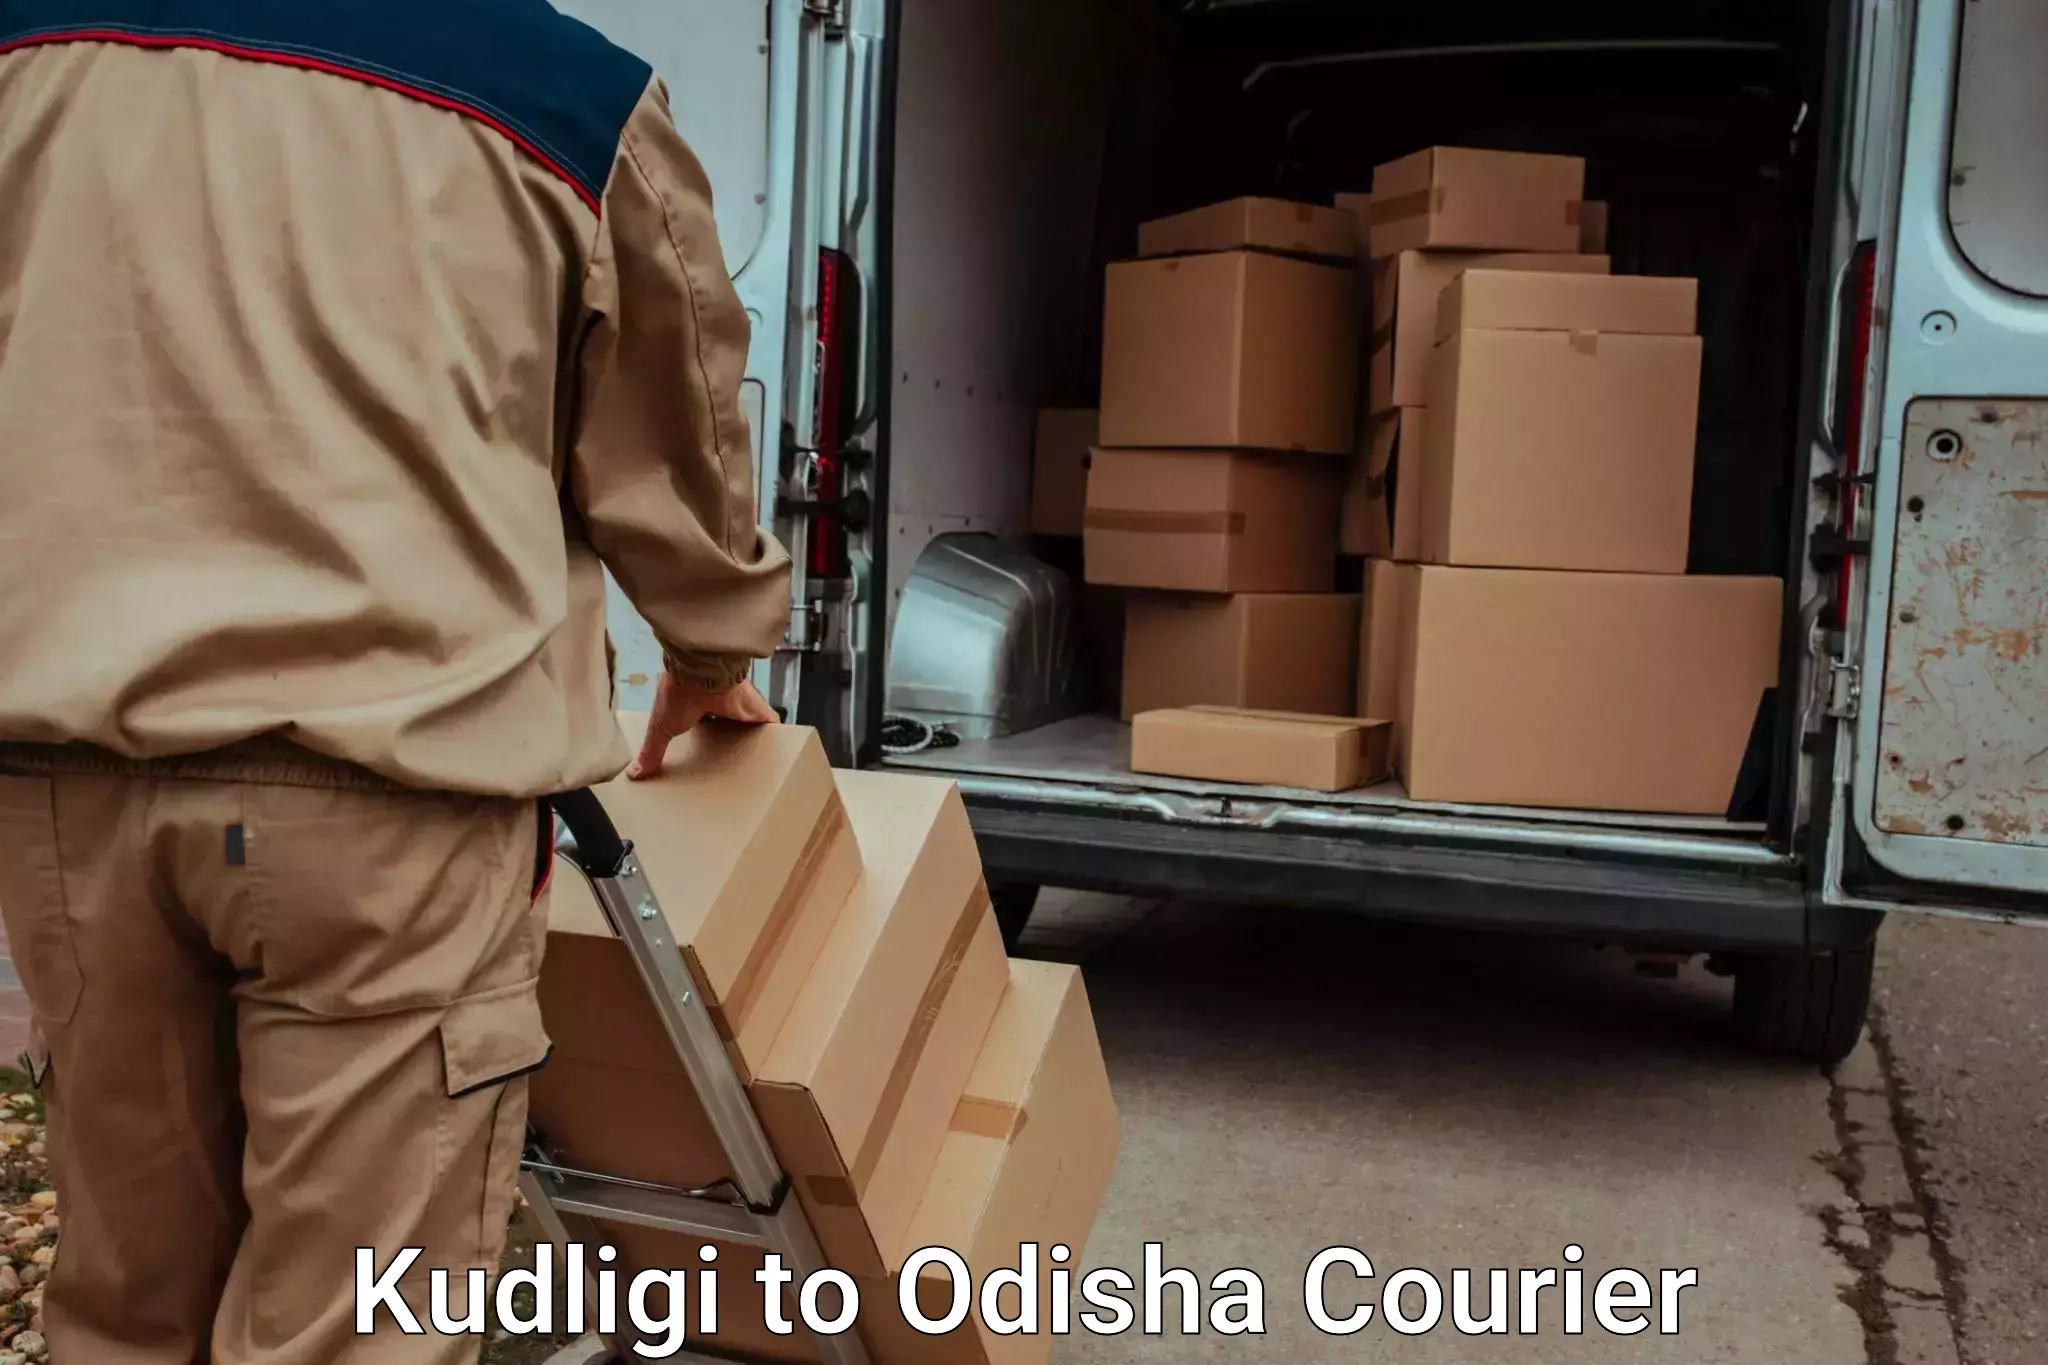 Affordable moving solutions Kudligi to Odisha